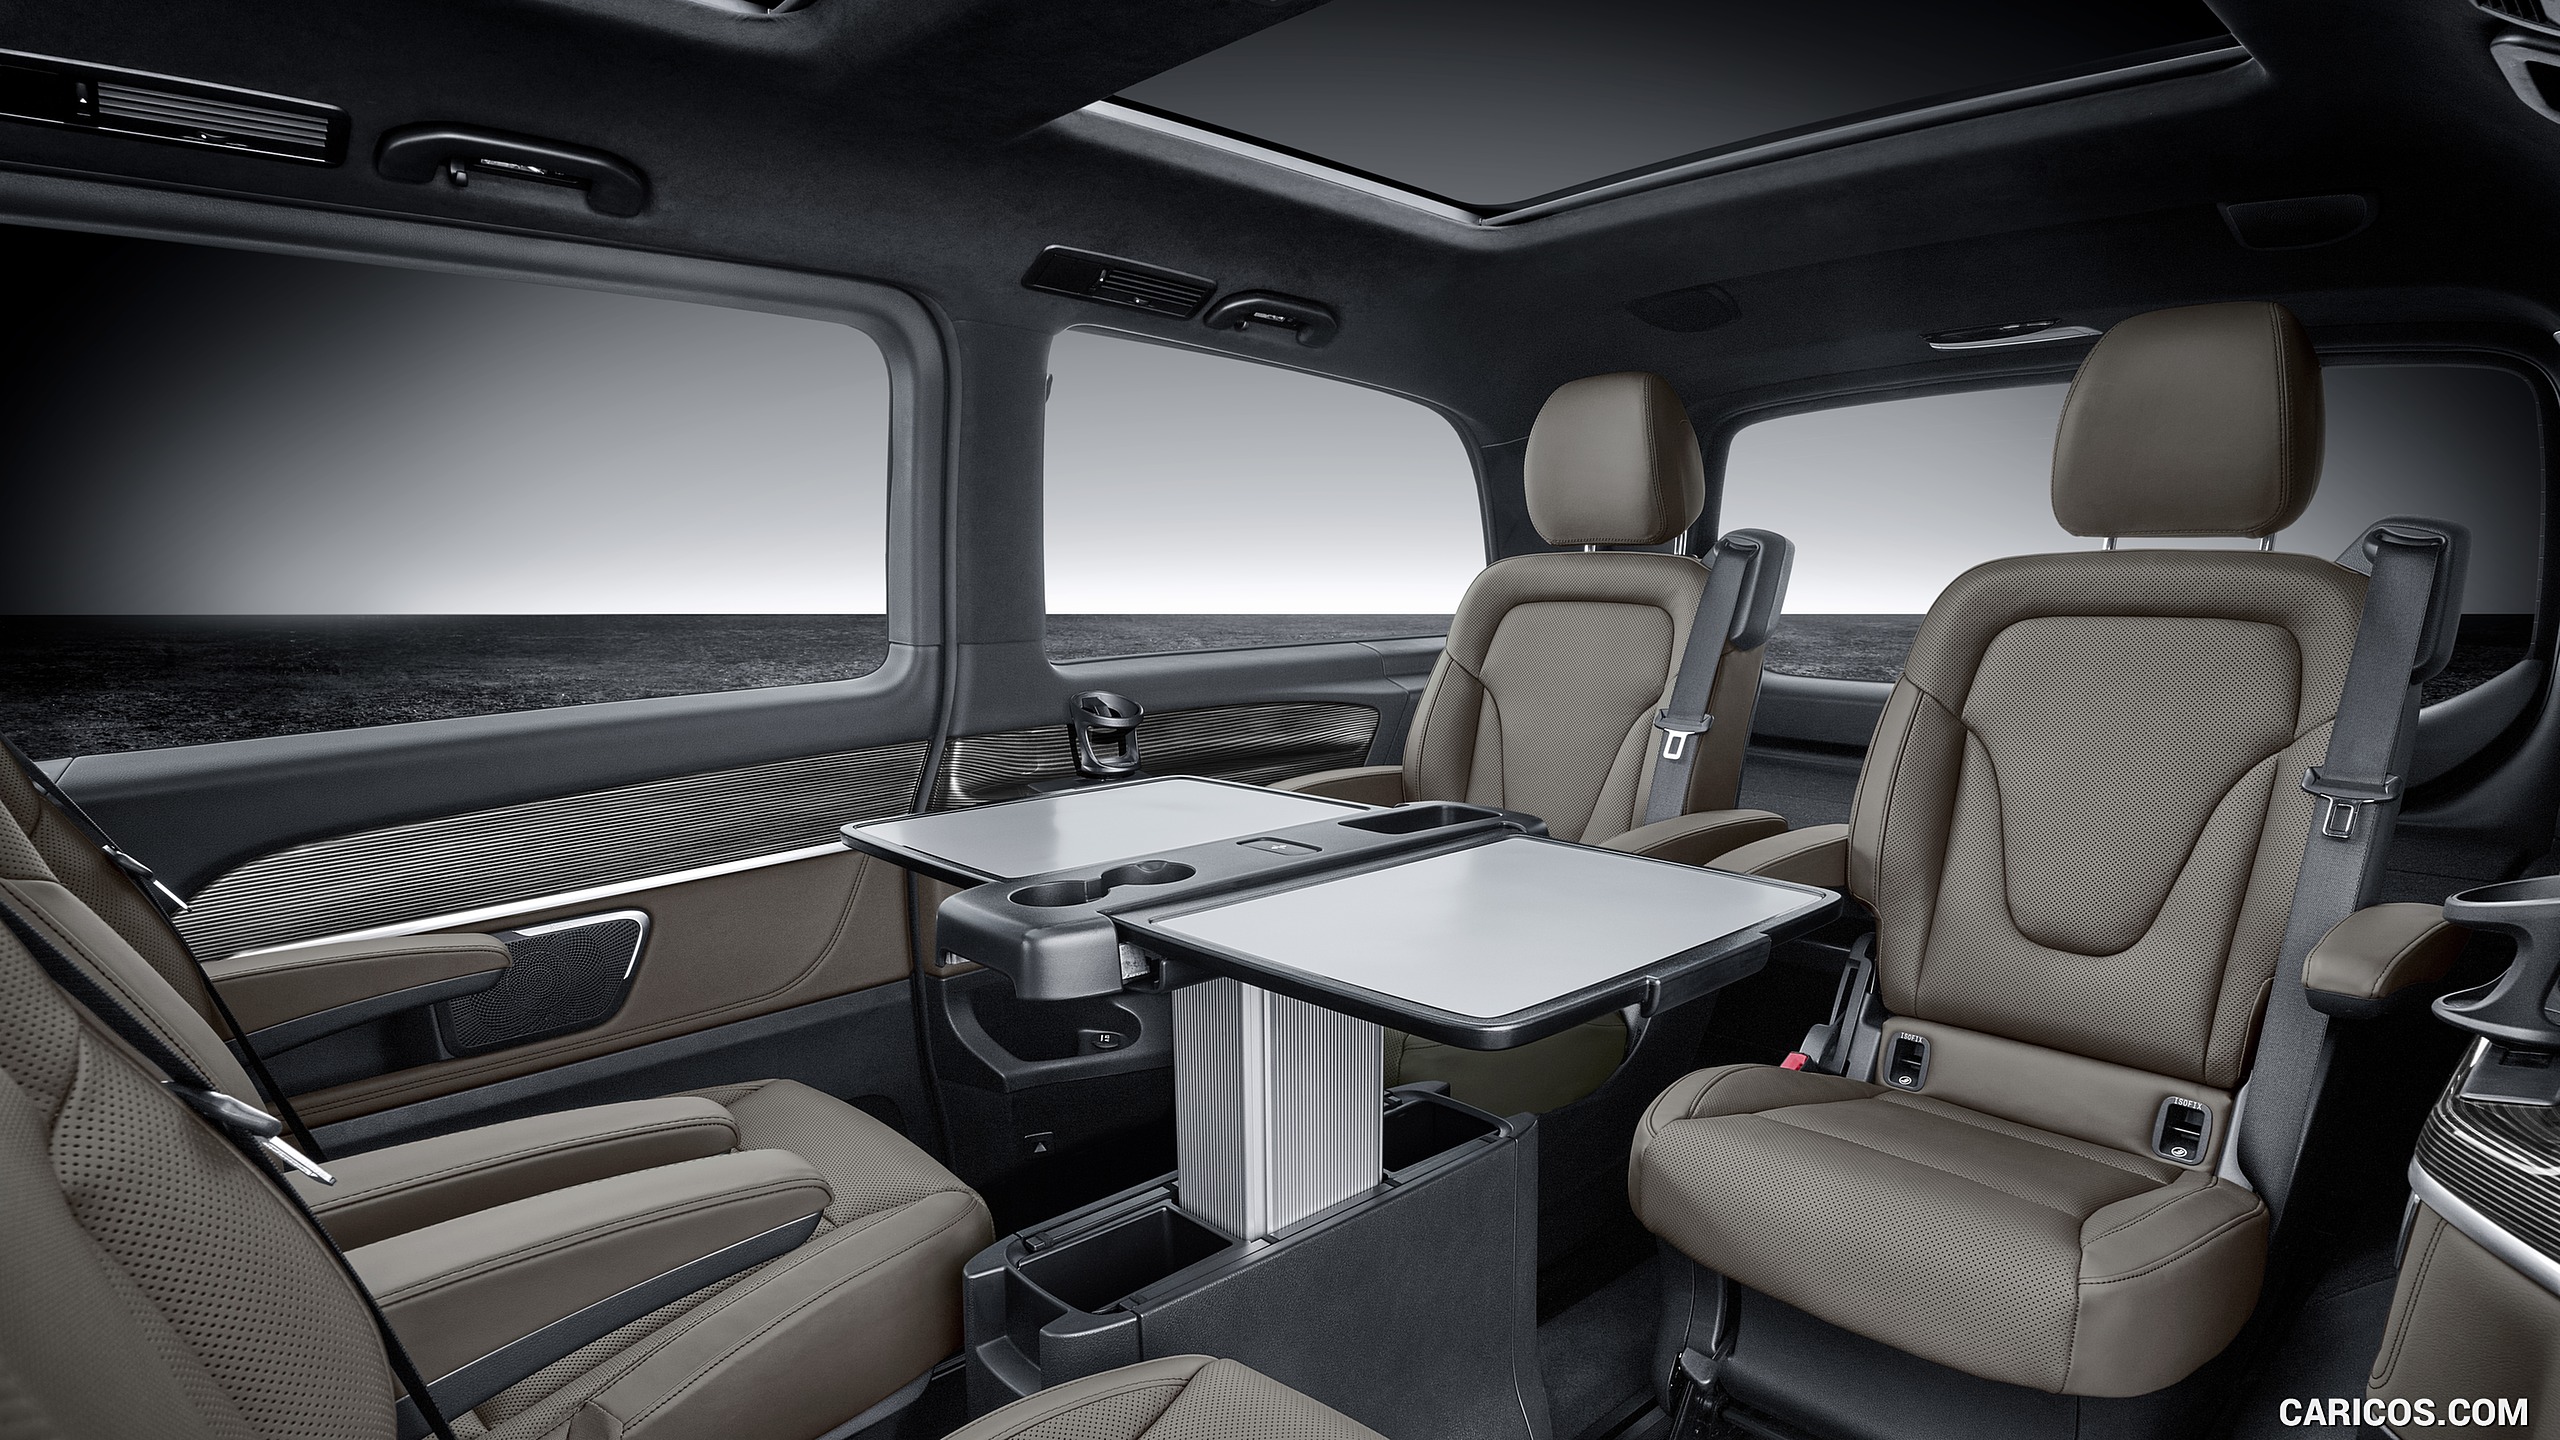 2019 Mercedes Benz V Class Exclusive Line Interior Seats Hd Wallpaper 74